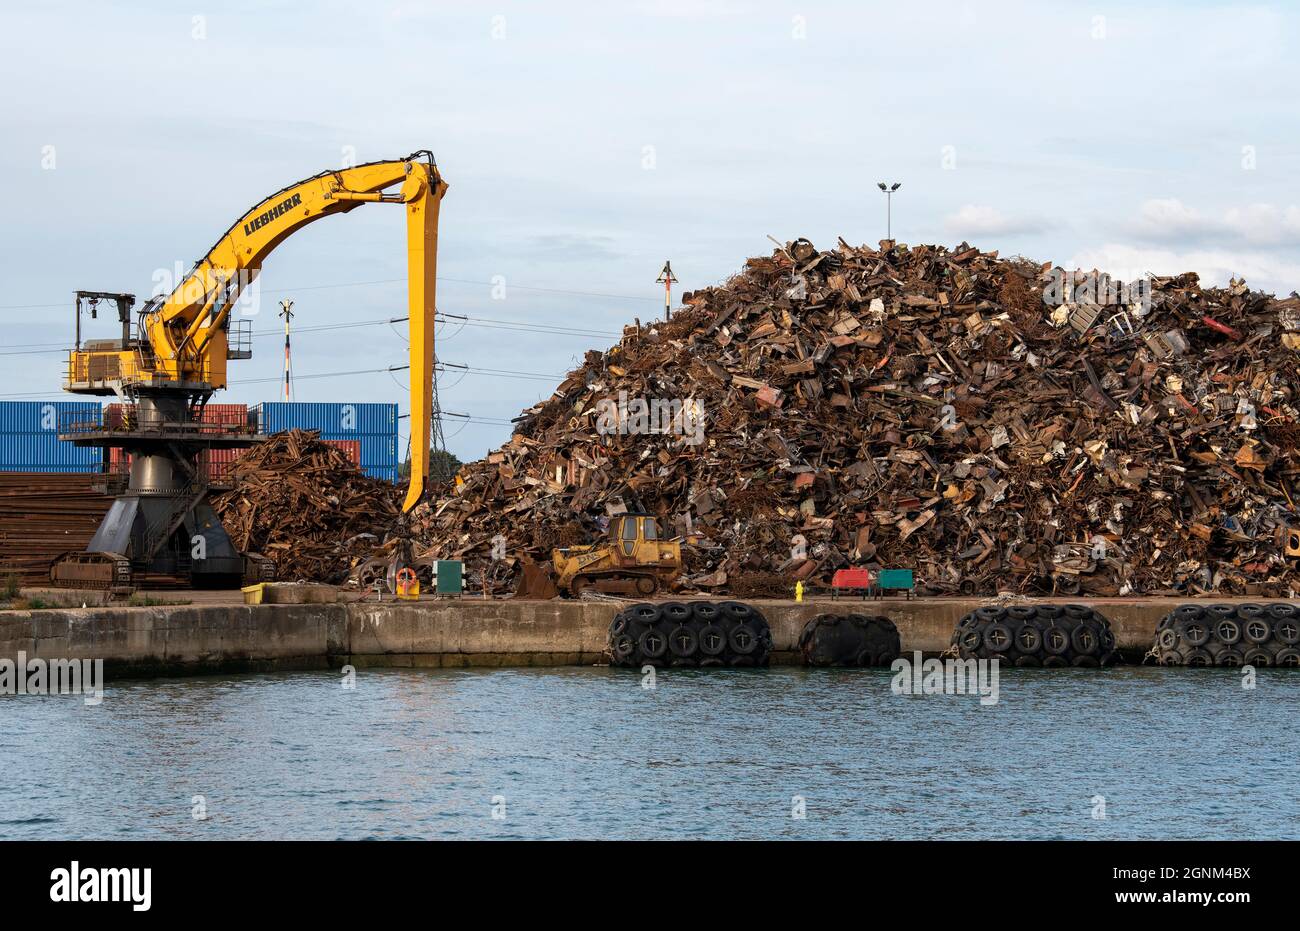 Southampton, Inglaterra, Reino Unido. 2021. Una excavadora de oruga amarilla en un muelle que mueve chatarra antes de cargarla en un buque de carga para su exportación. Foto de stock